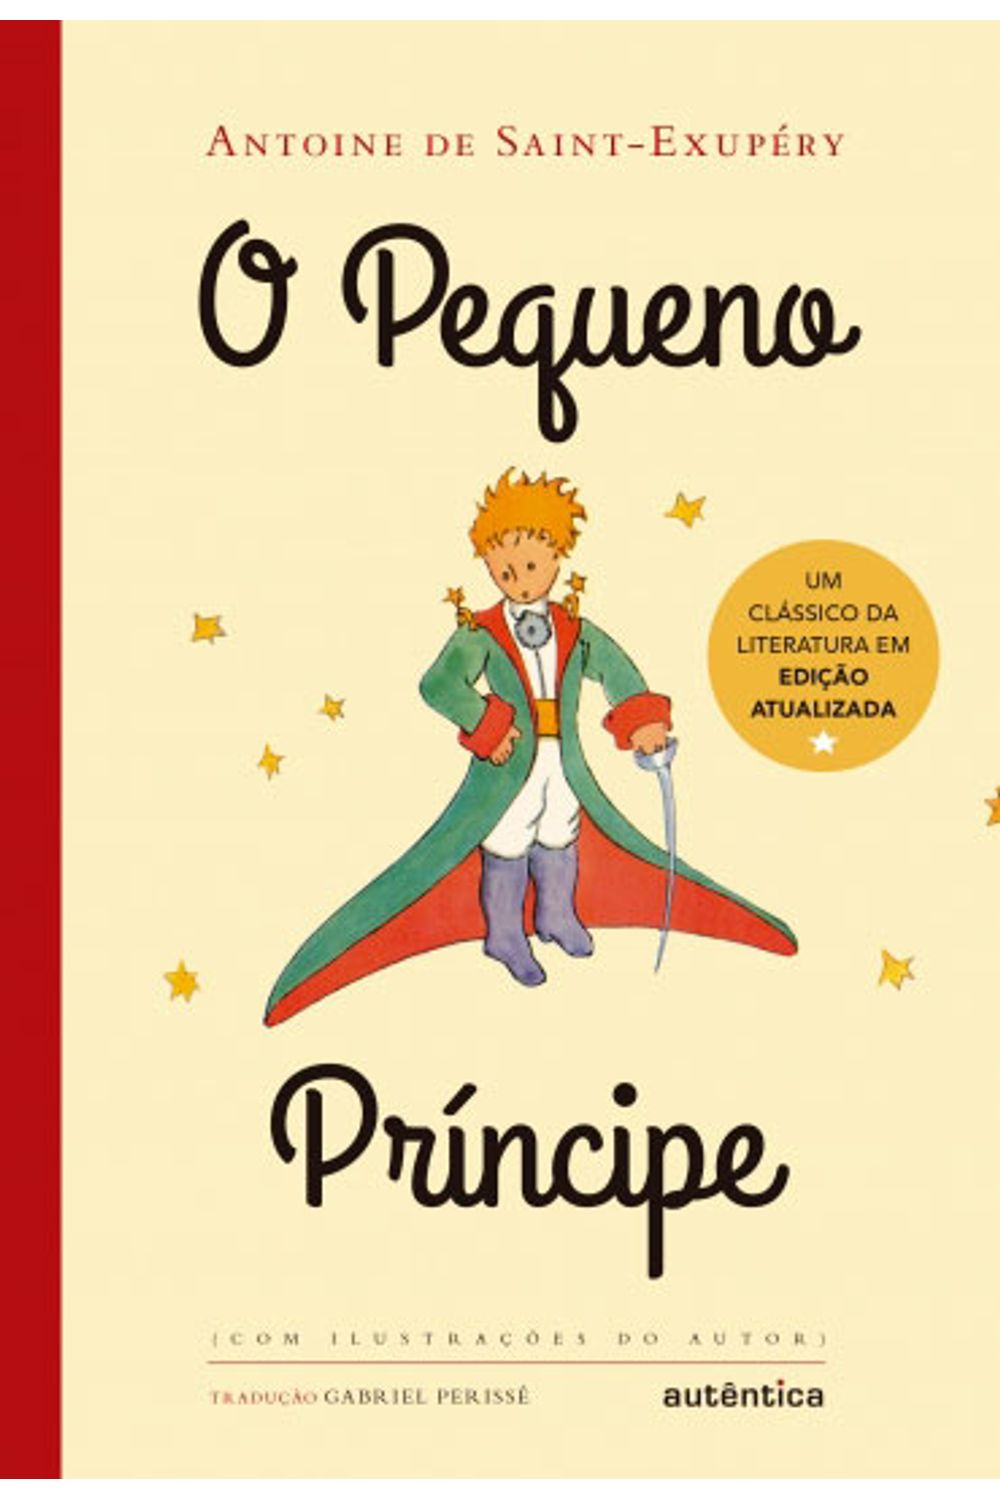 Ficha de leitura do livro O Pequeno Príncipe de Antoine de Saint-Exupéry.